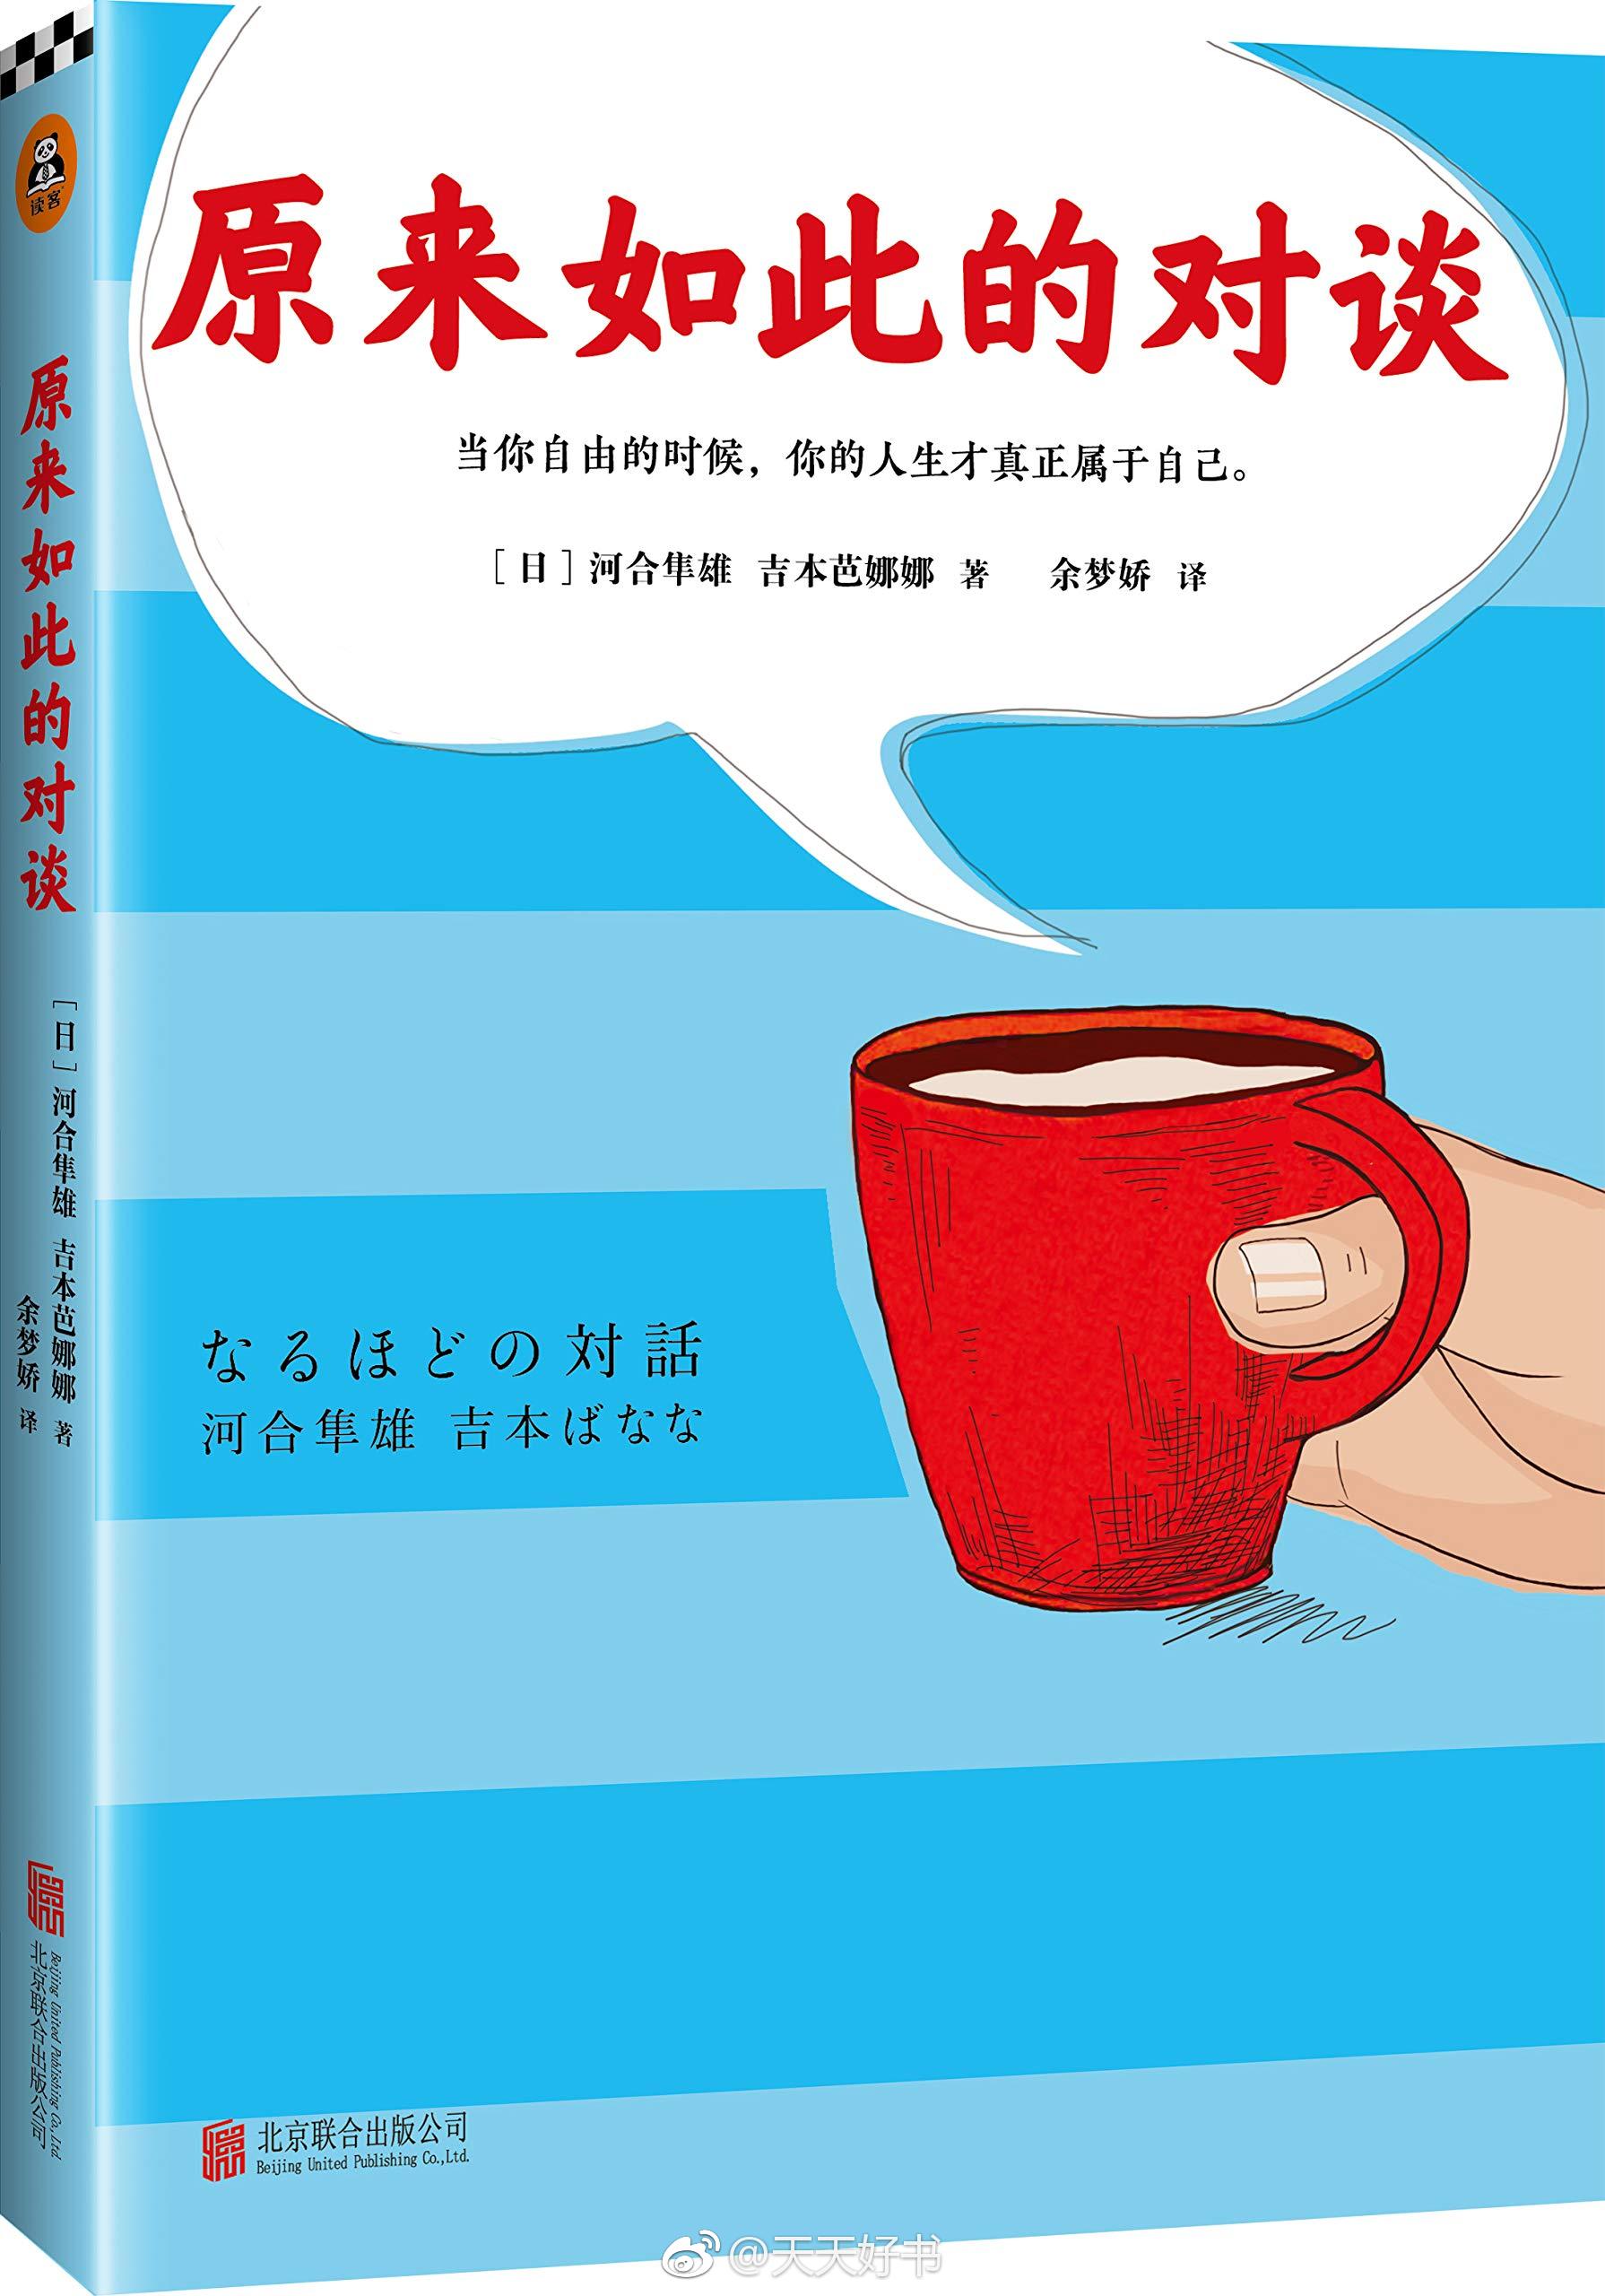 【新书】《原来如此的对谈》是日本心理学家河合隼雄与日本作家吉本